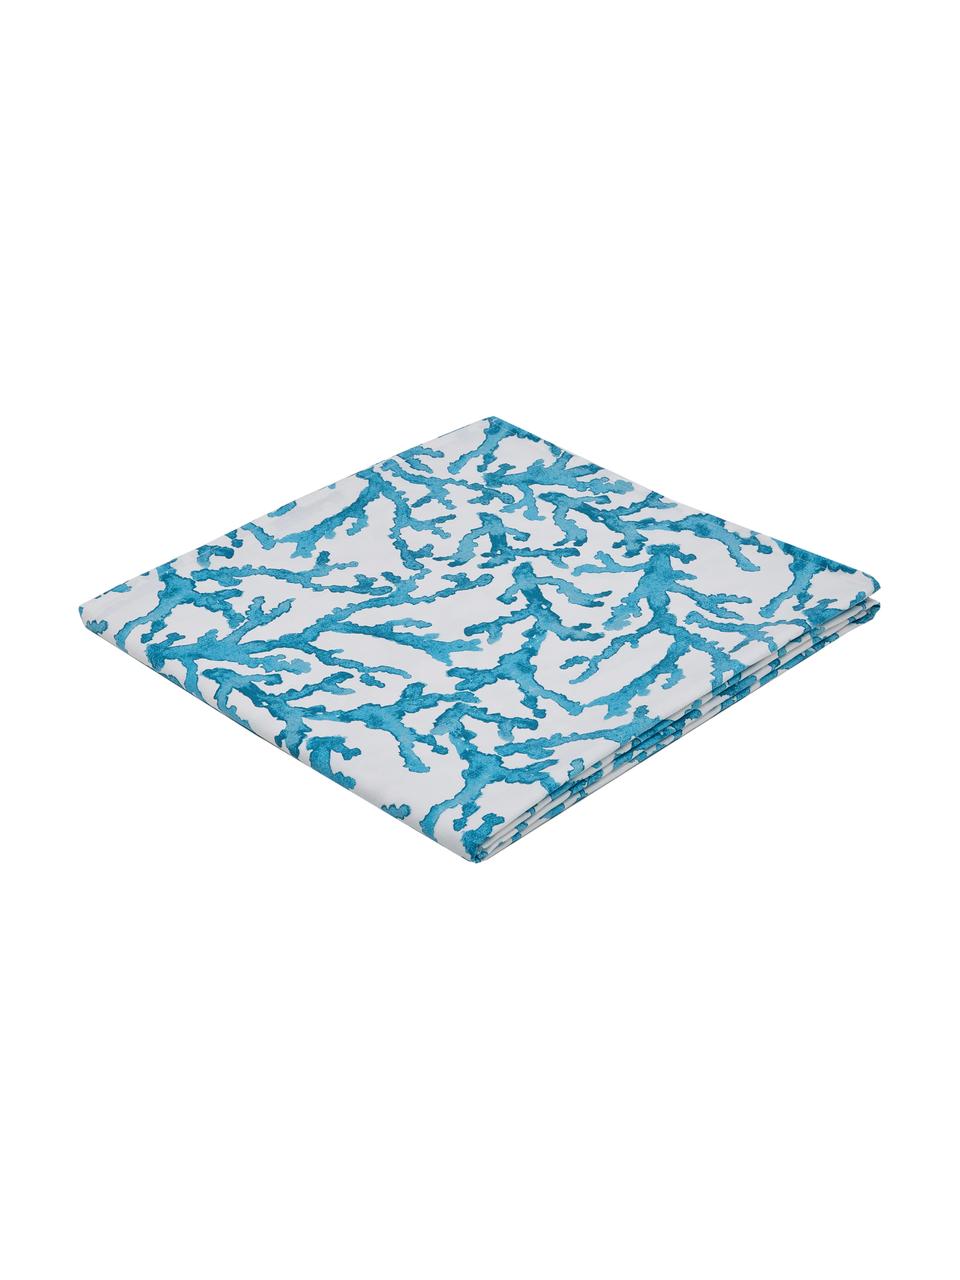 Baumwoll-Tischdecke Estran mit Korallenprint, Baumwolle, Blau, Weiss, Für 4 - 6 Personen (B 160 x L 160 cm)